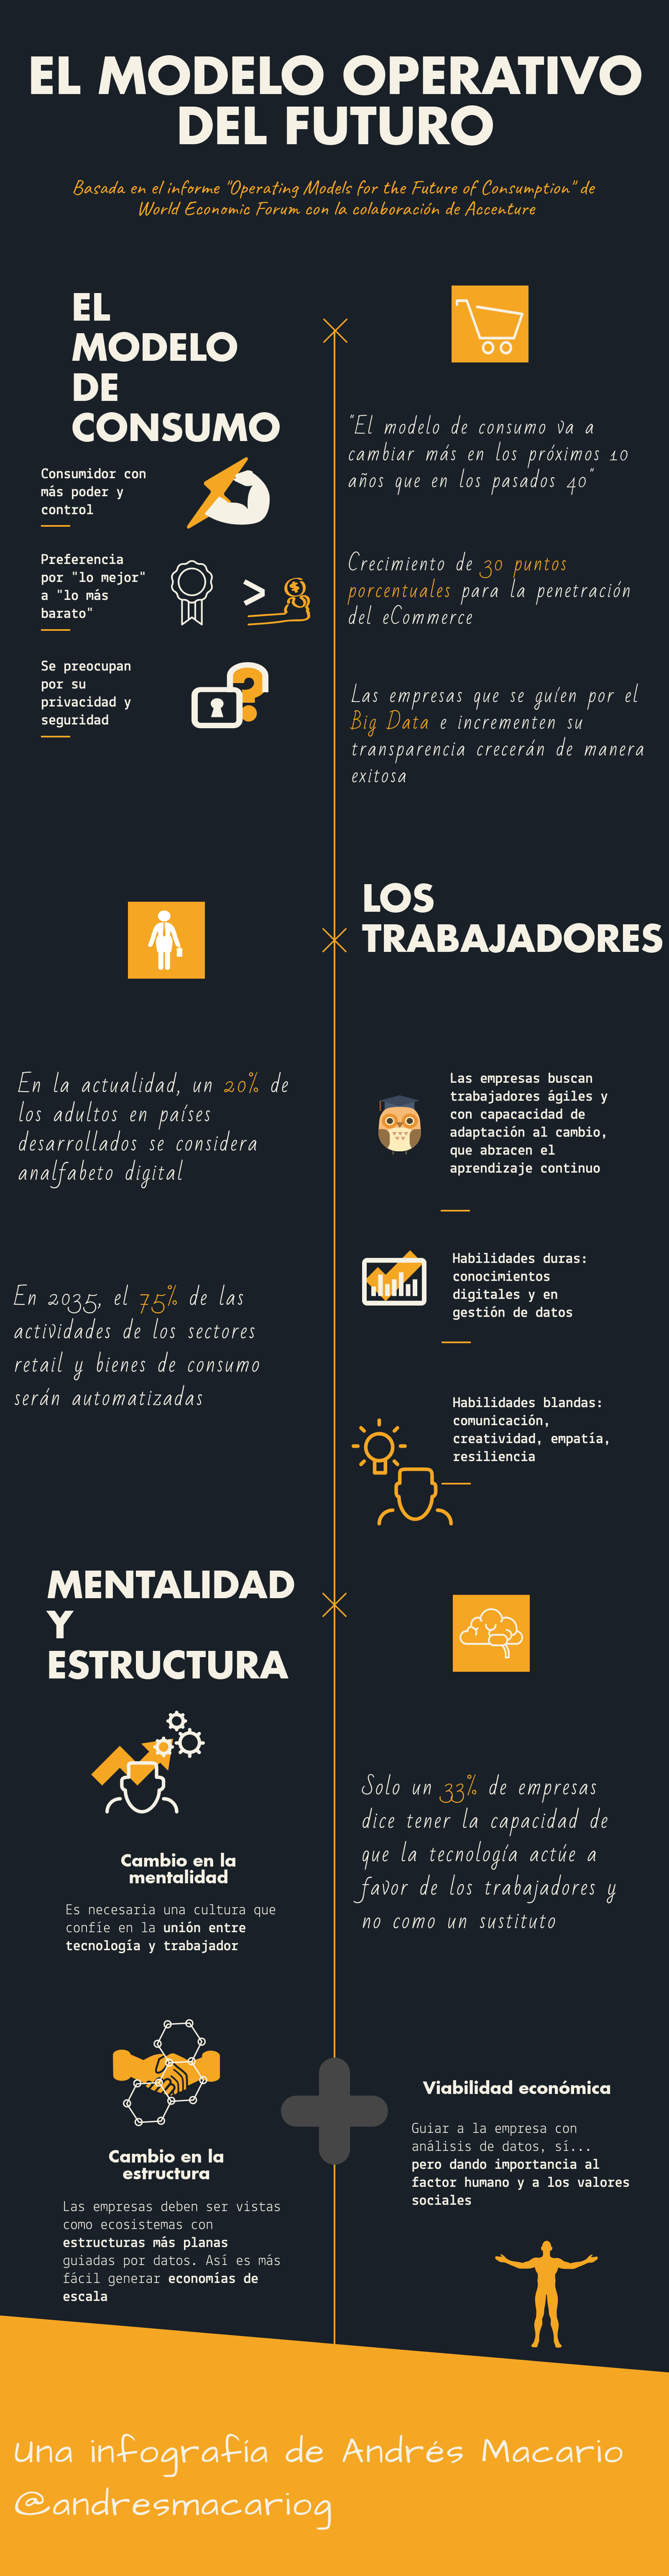 El modelo operativo del futuro - infografía Andrés Macario